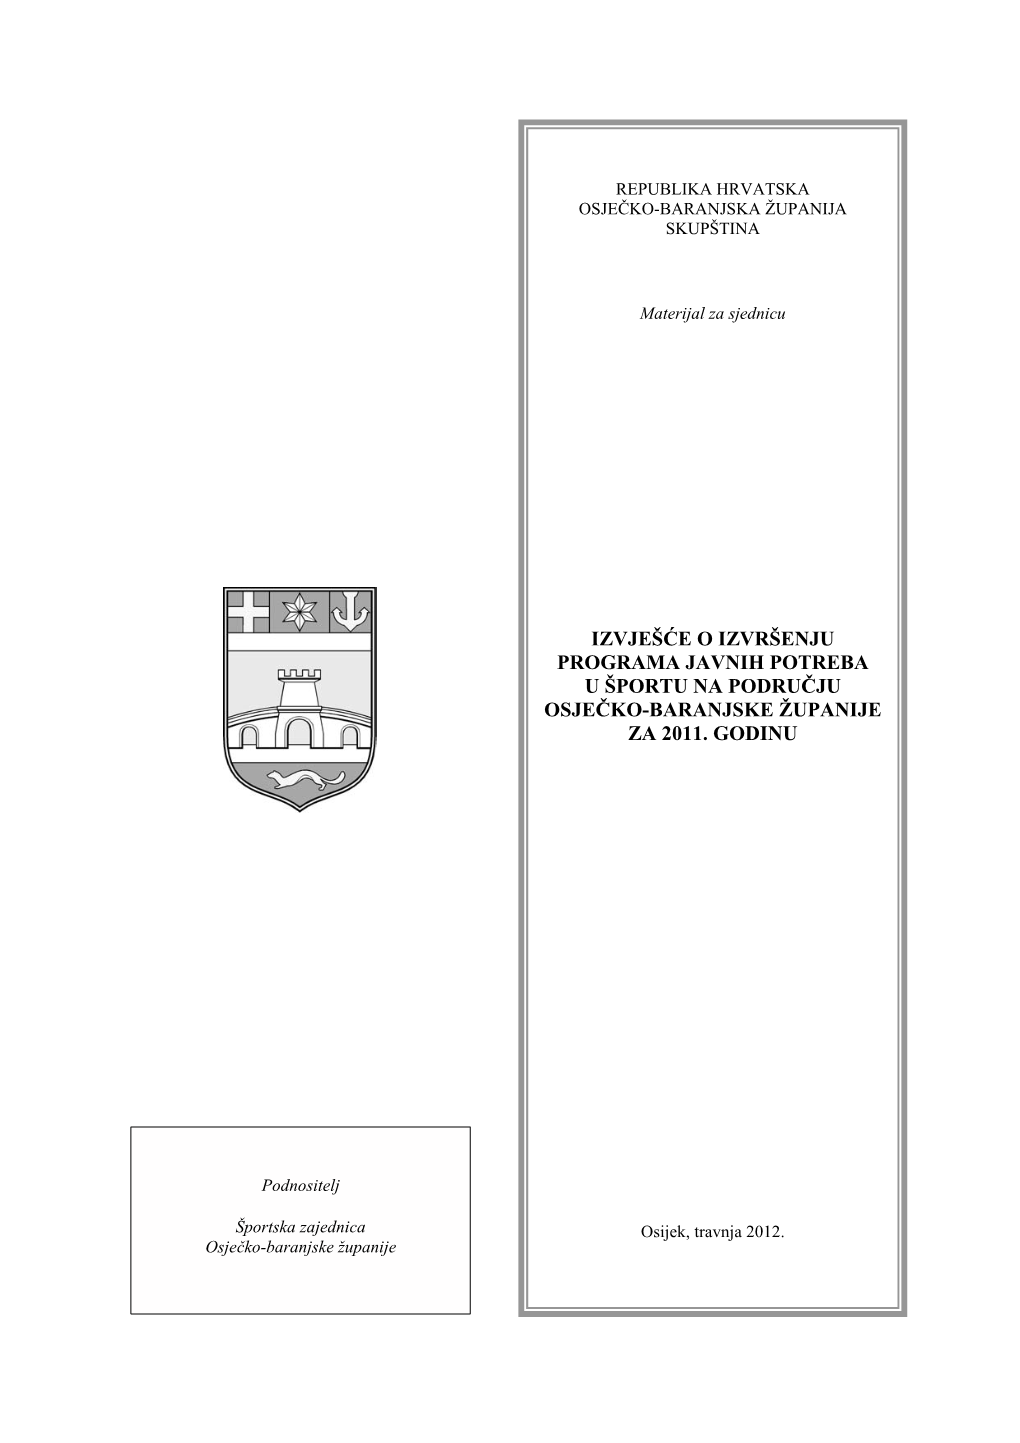 Izvješće O Izvršenju Programa Javnih Potreba U Športu Na Području Osječko-Baranjske Županije Za 2011